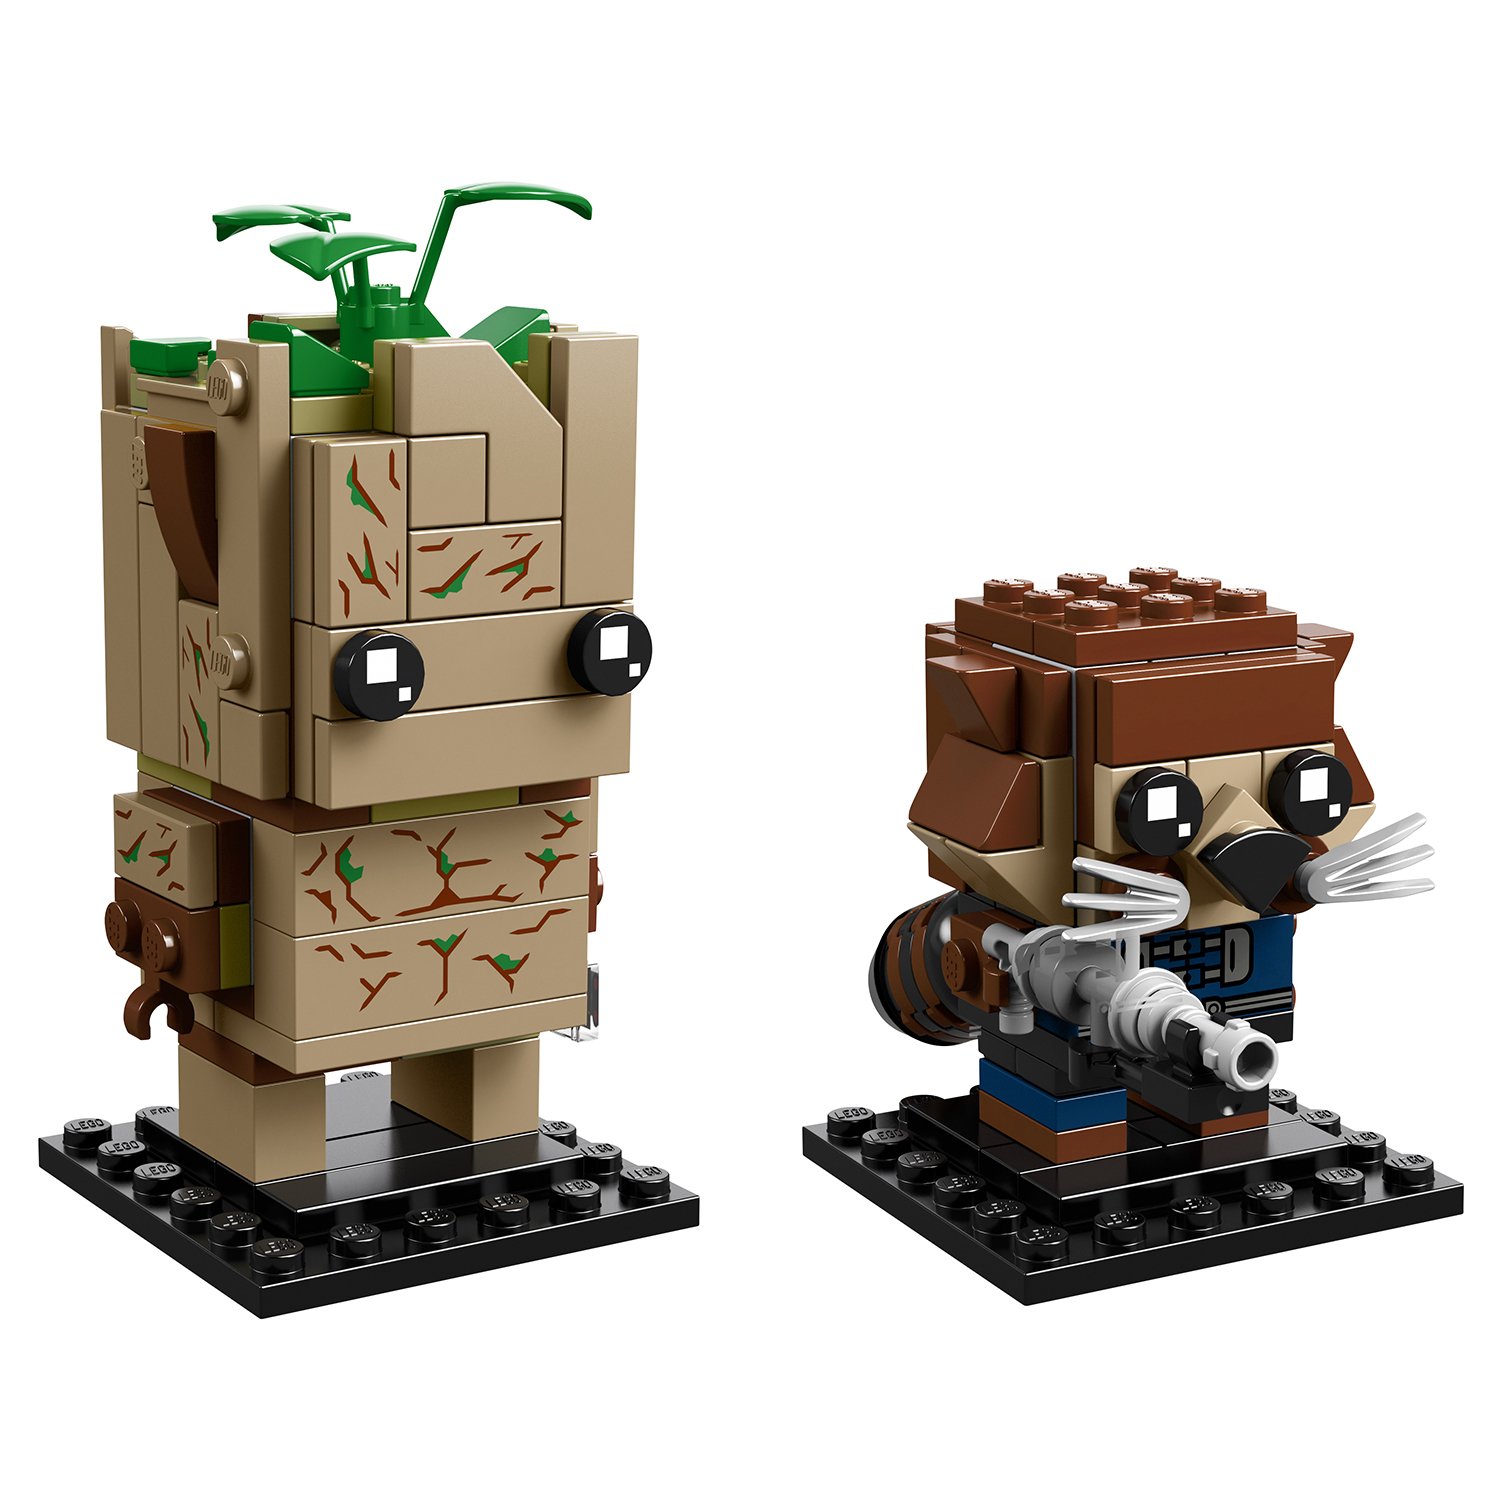 Lego BrickHeadz 41626 Грут и Ракета